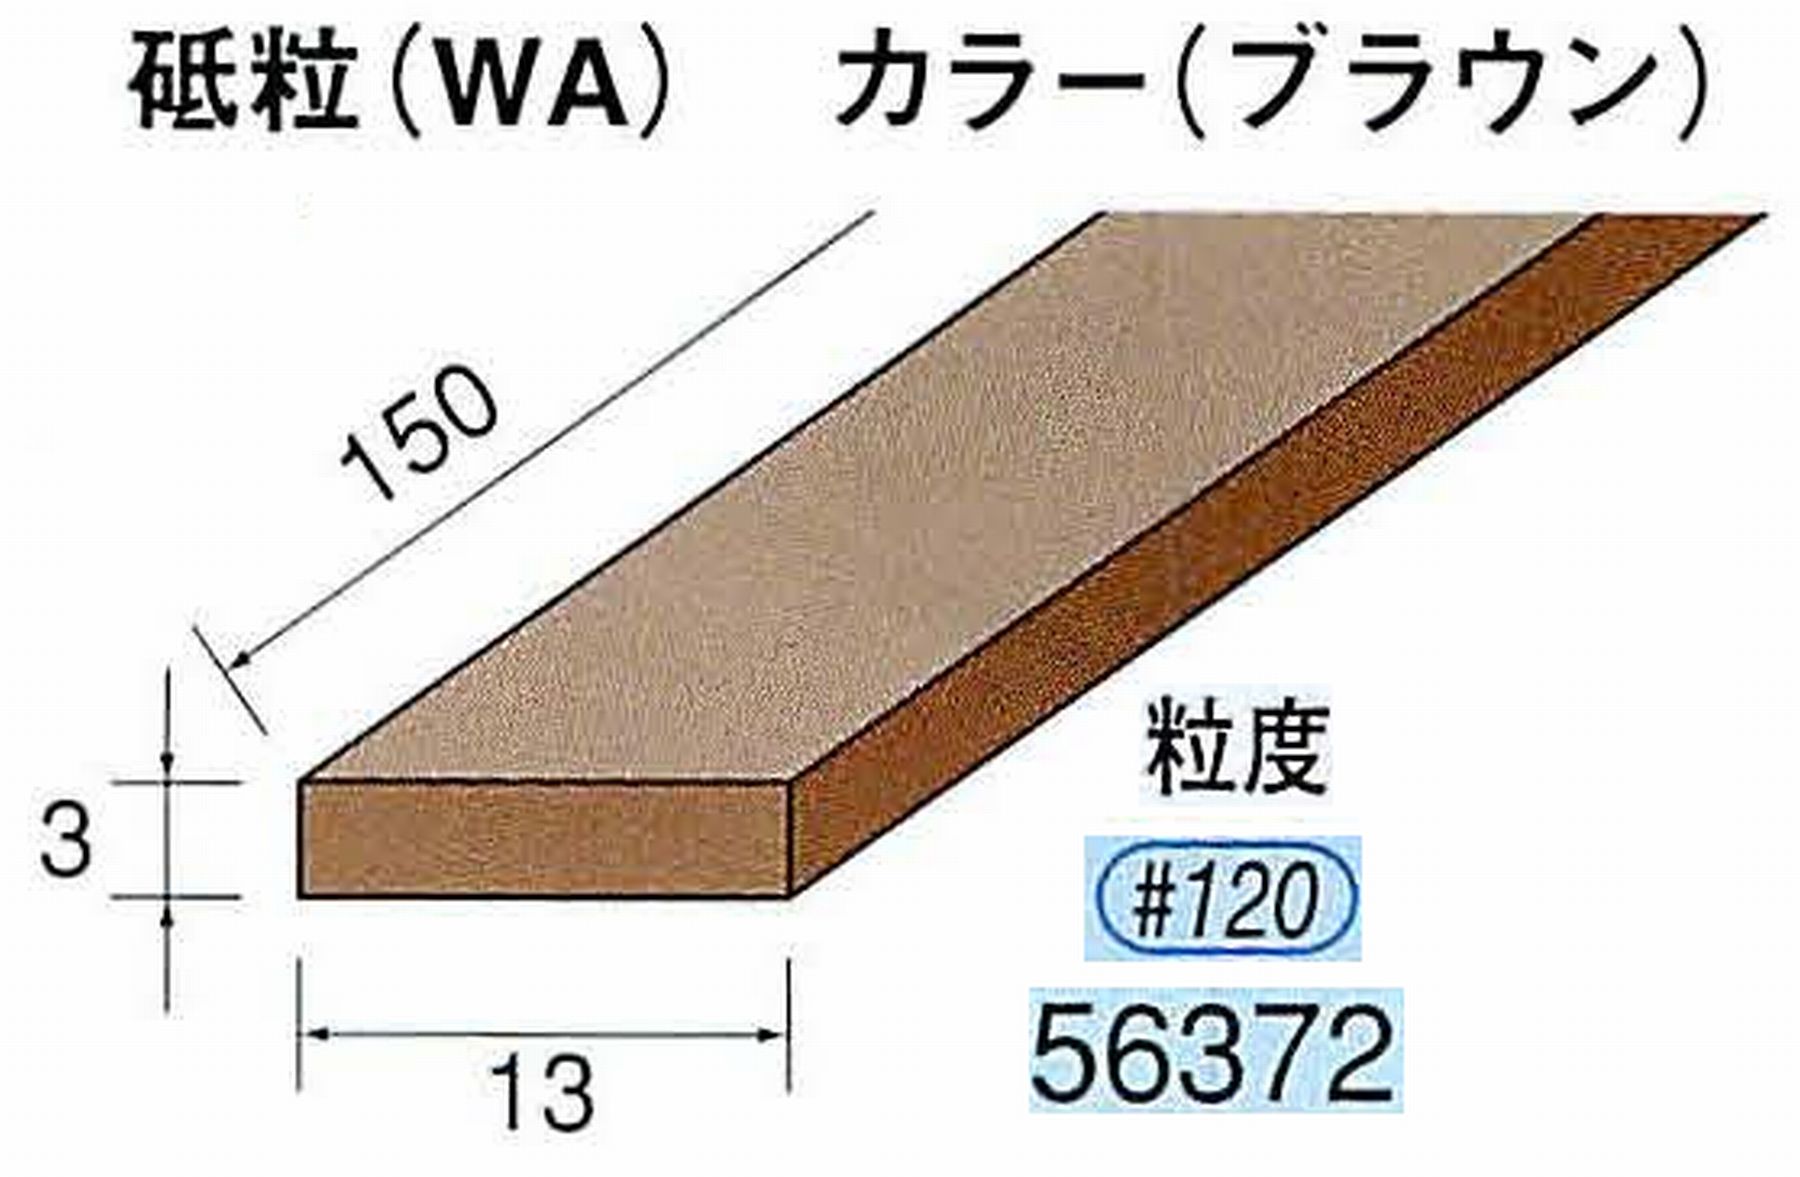 ナカニシ/NAKANISHI スティック砥石 ブラウン・フィニッシュシリーズ 砥粒(WA) 56372